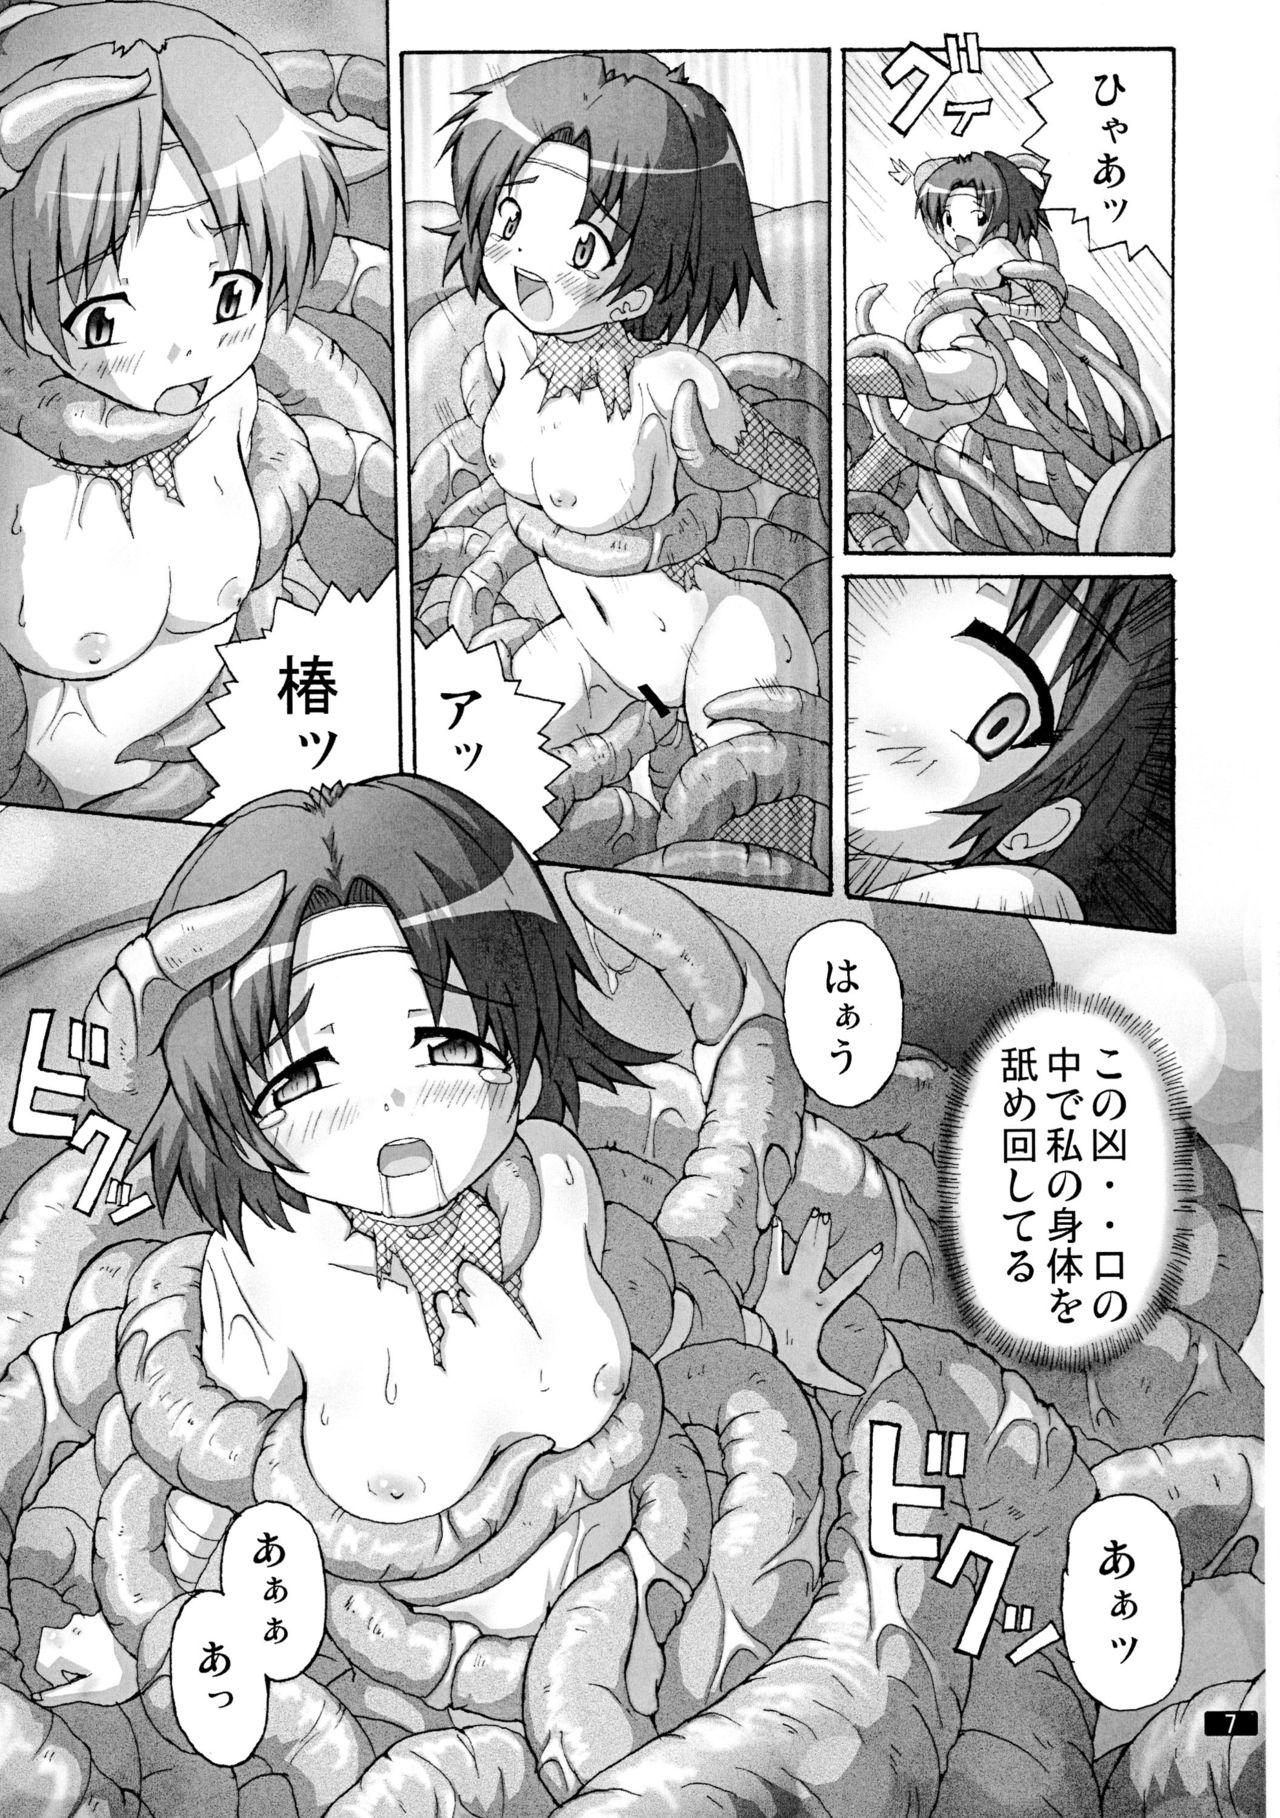 Nasty Kaiun no Taimashi Nozomi 5 1/ 2 Cuckold - Page 7